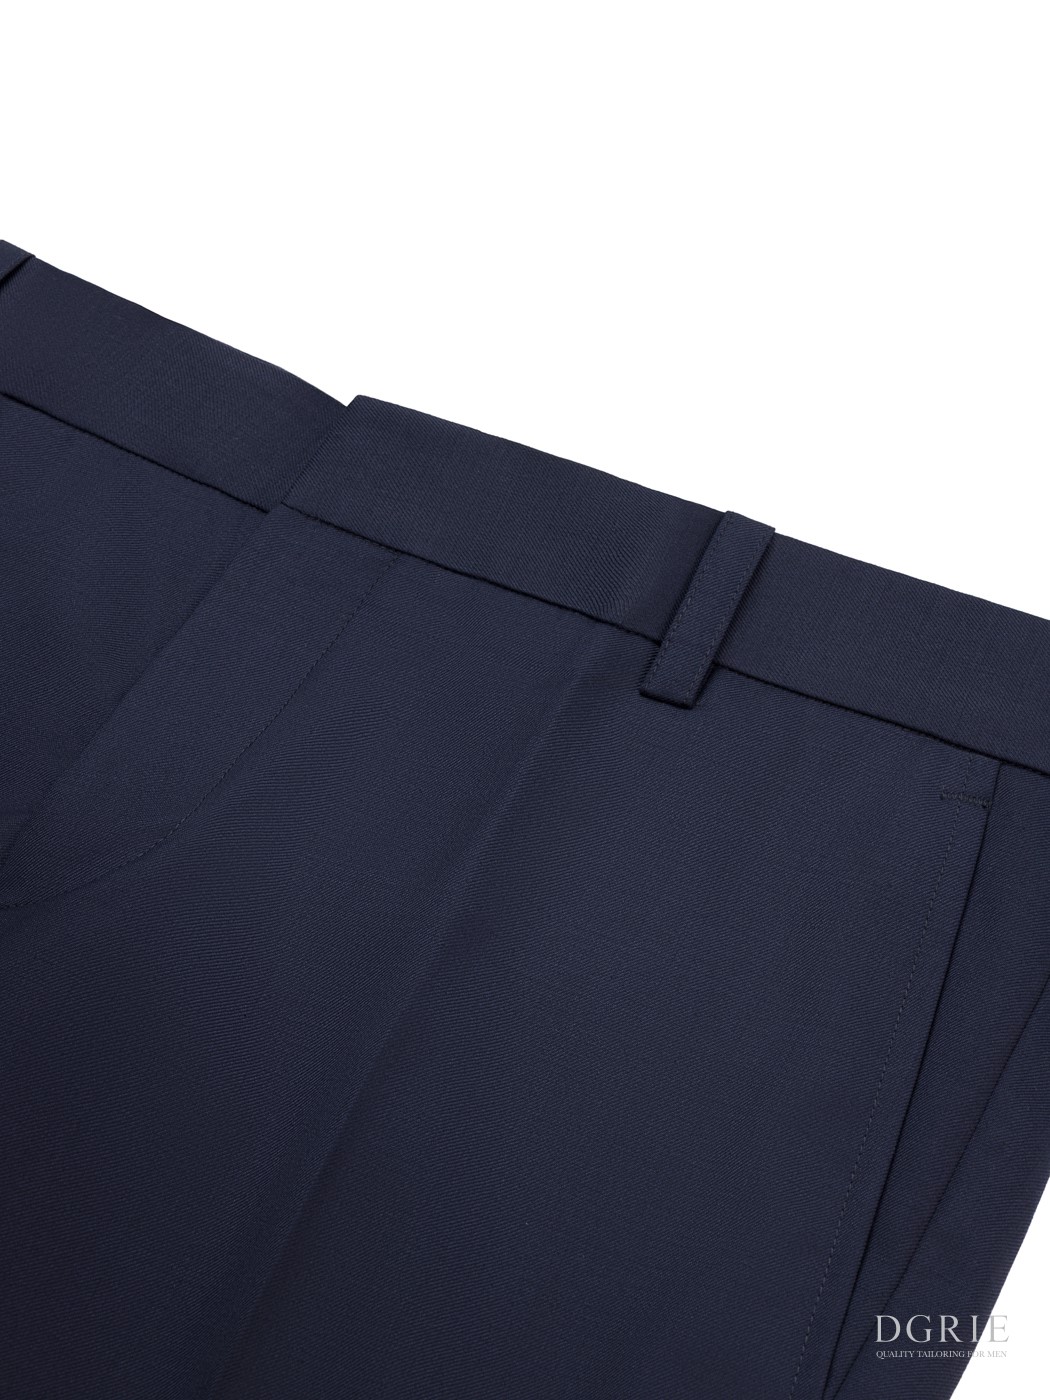 DGRIE Victory Navy Blue Pants กางเกงขายาวสีน้ำเงิน - DGRIE - SHOP